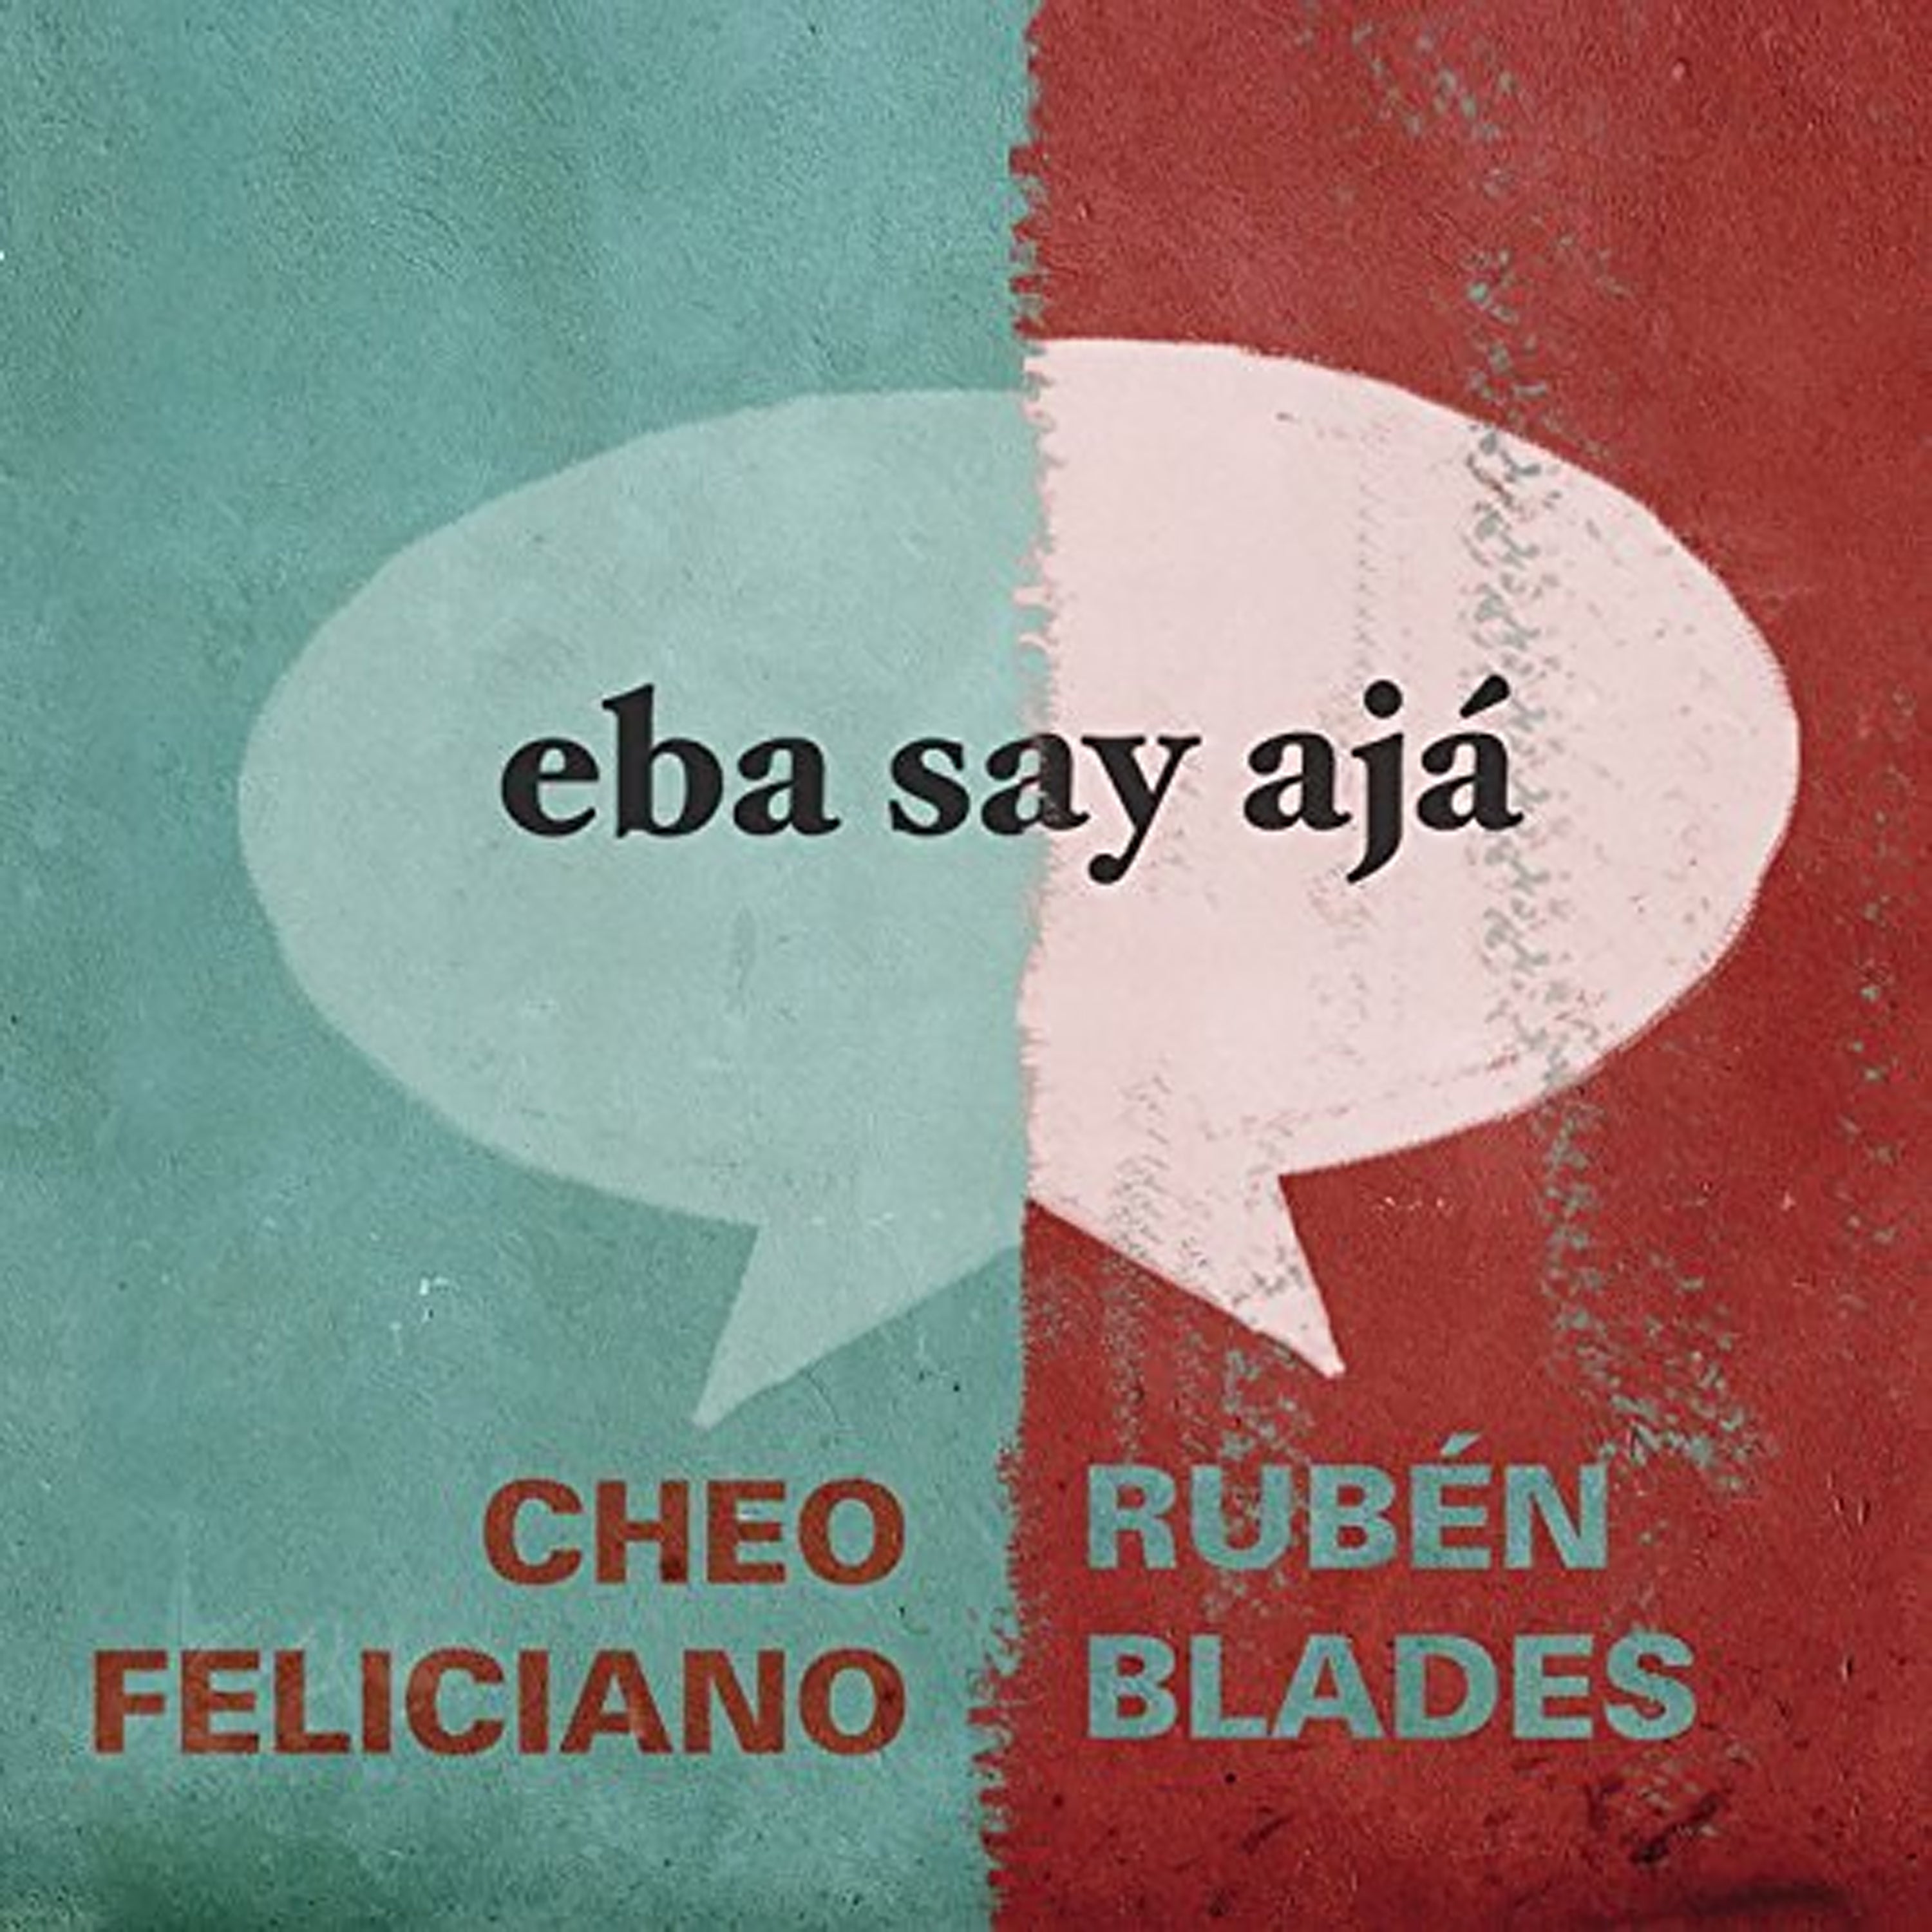 Rubén Blades & Cheo Feliciano -"Eba Say Aha"| CD or Digital Download